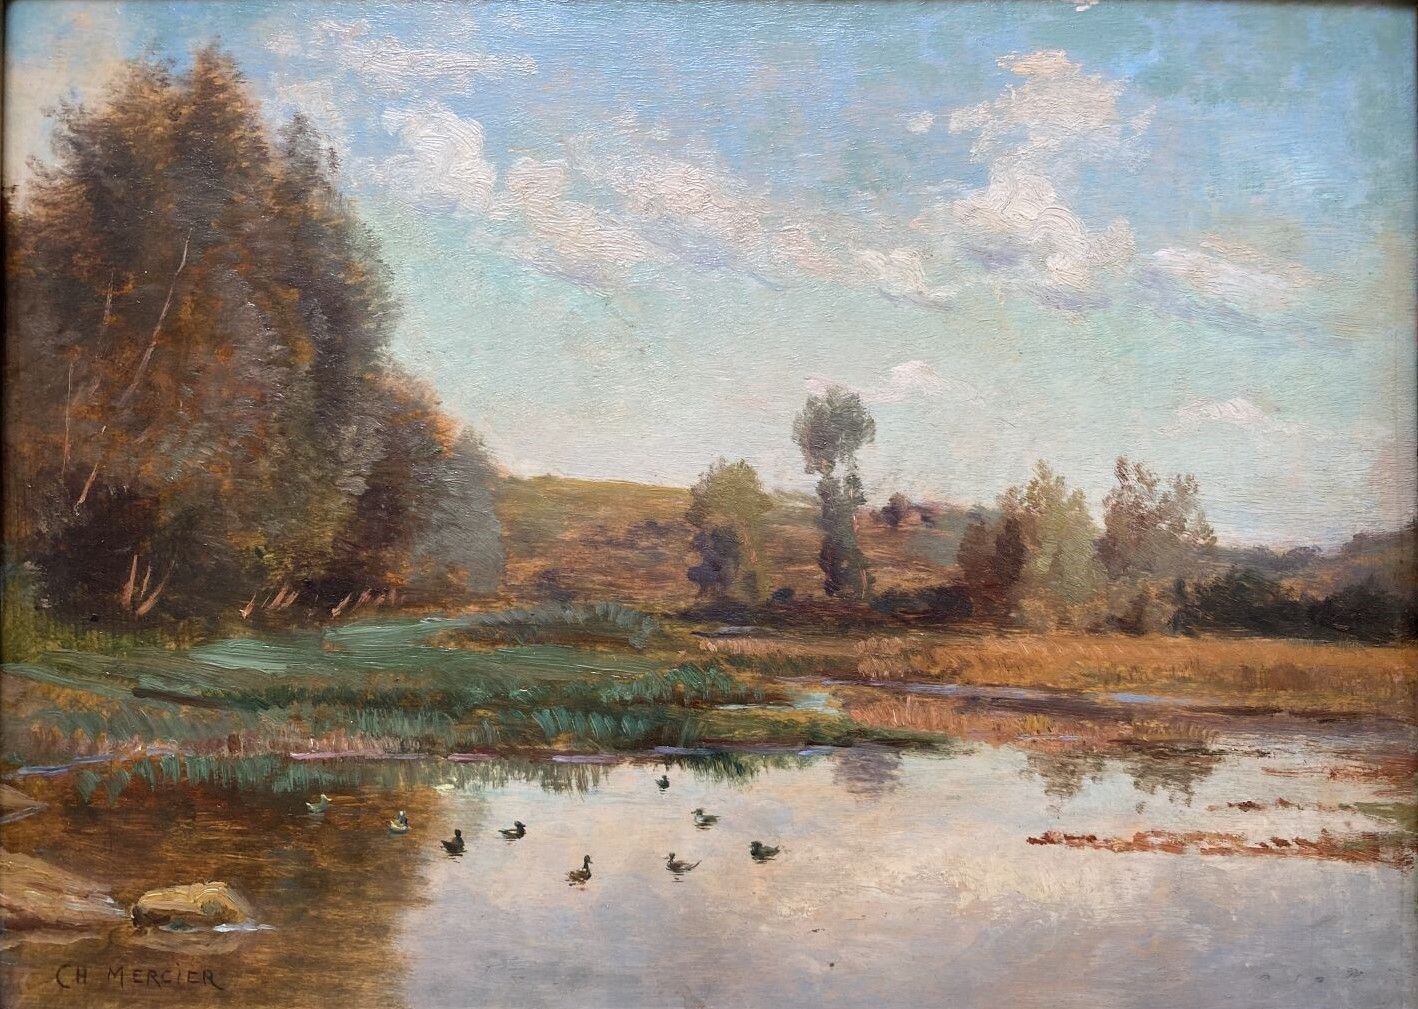 Null 让-查尔斯-梅里埃 (1832-1909)

湖泊景观

面板油画，左下角有签名。

25 x 34 厘米